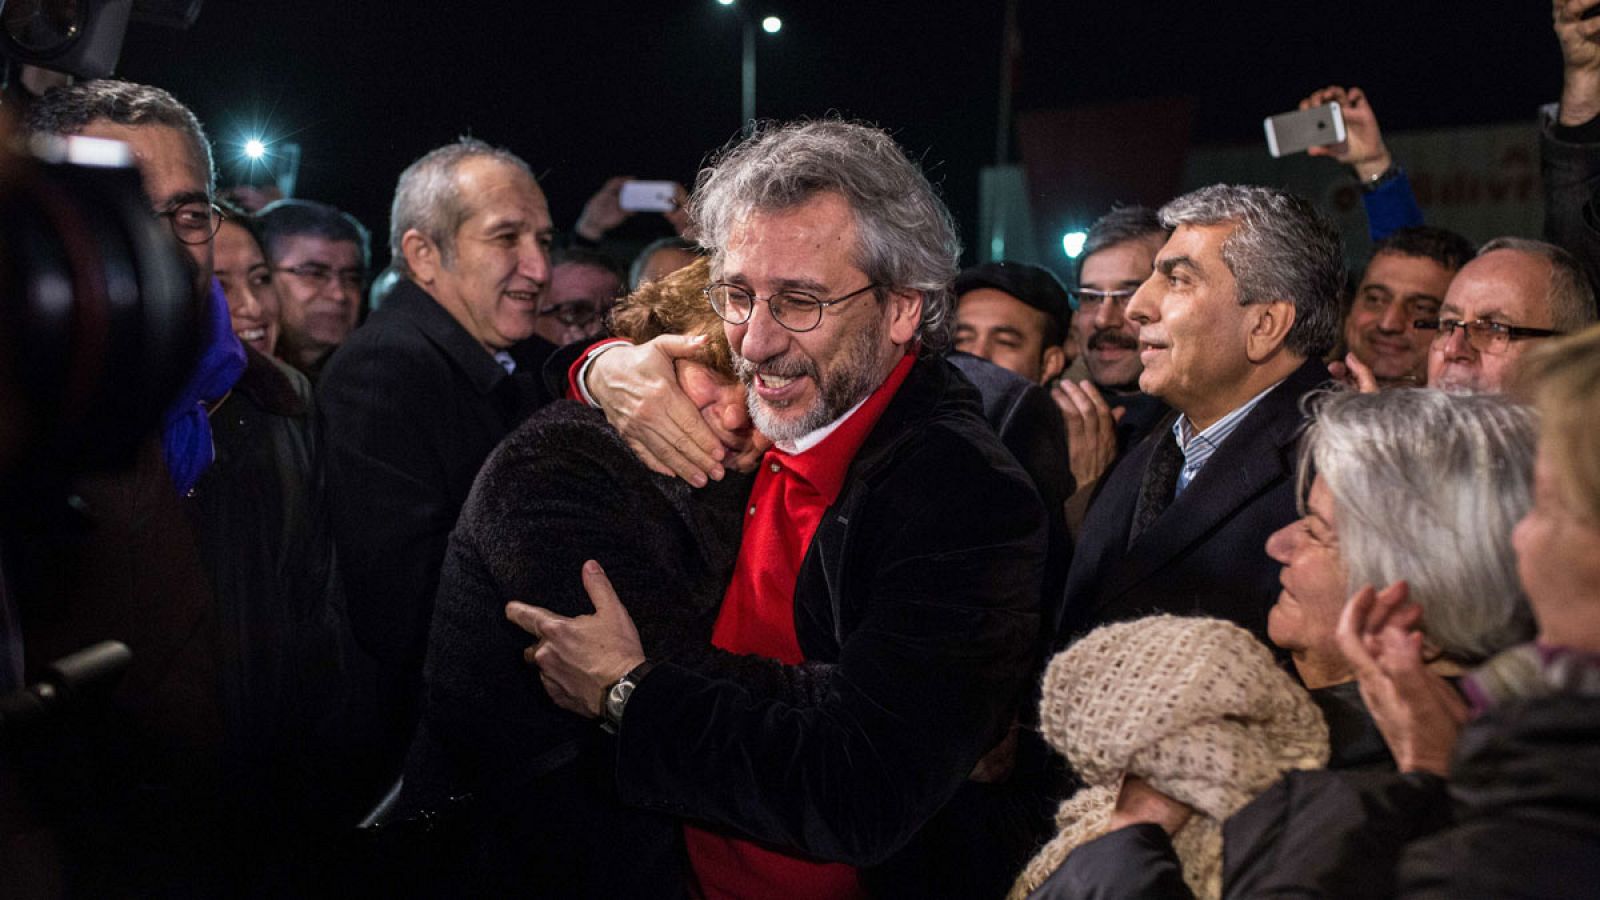 El periodista Can Dündar abraza a su esposa, Dilek Dundar, tras ser liberado en Turquía